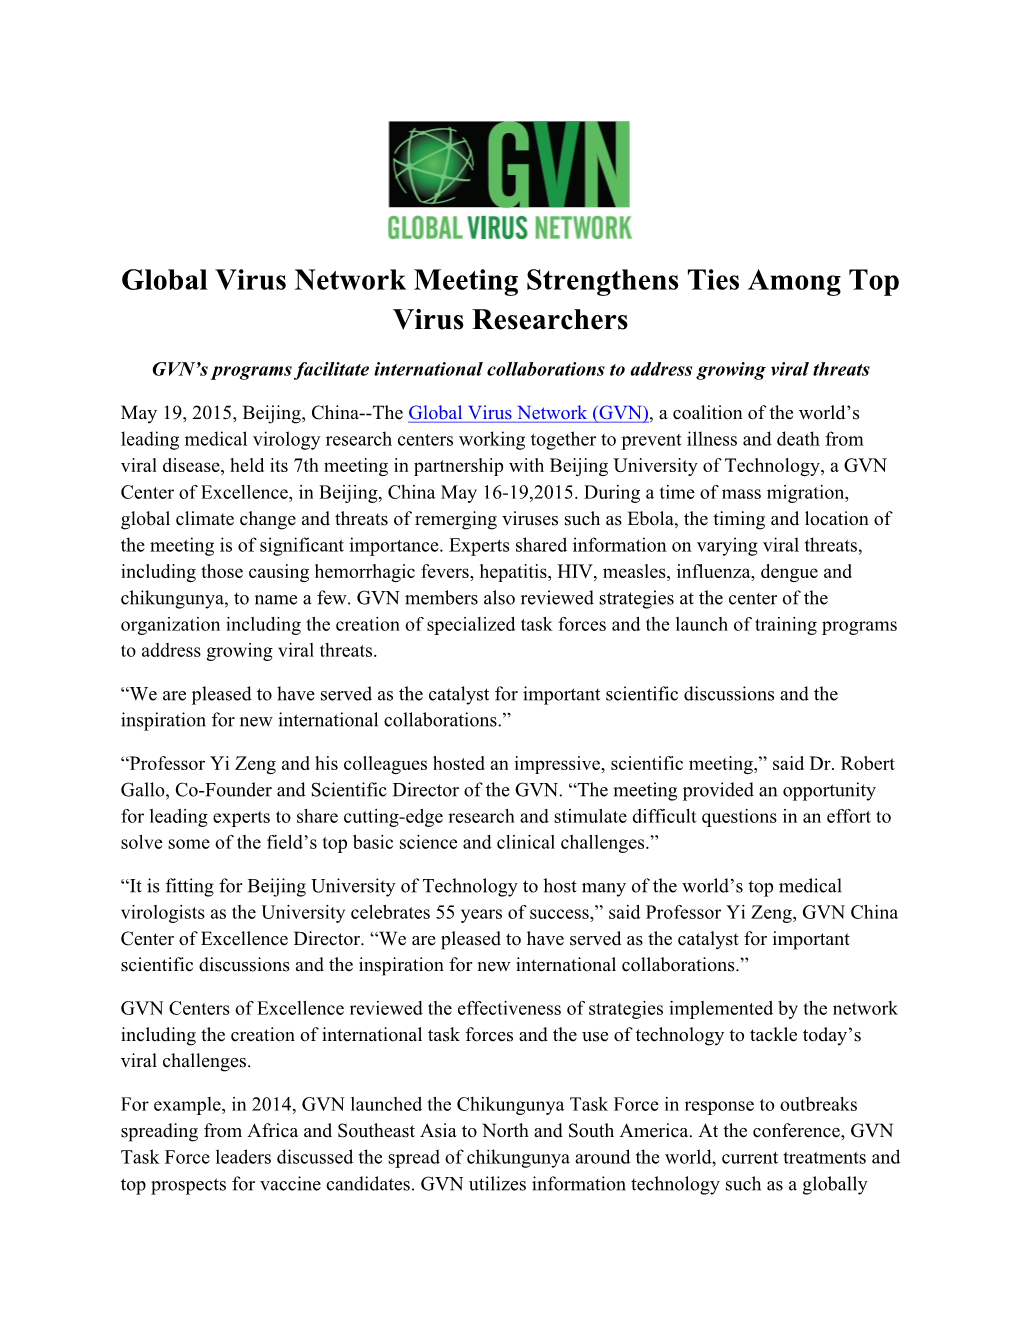 Global Virus Network Meeting Strengthens Ties Among Top Virus Researchers